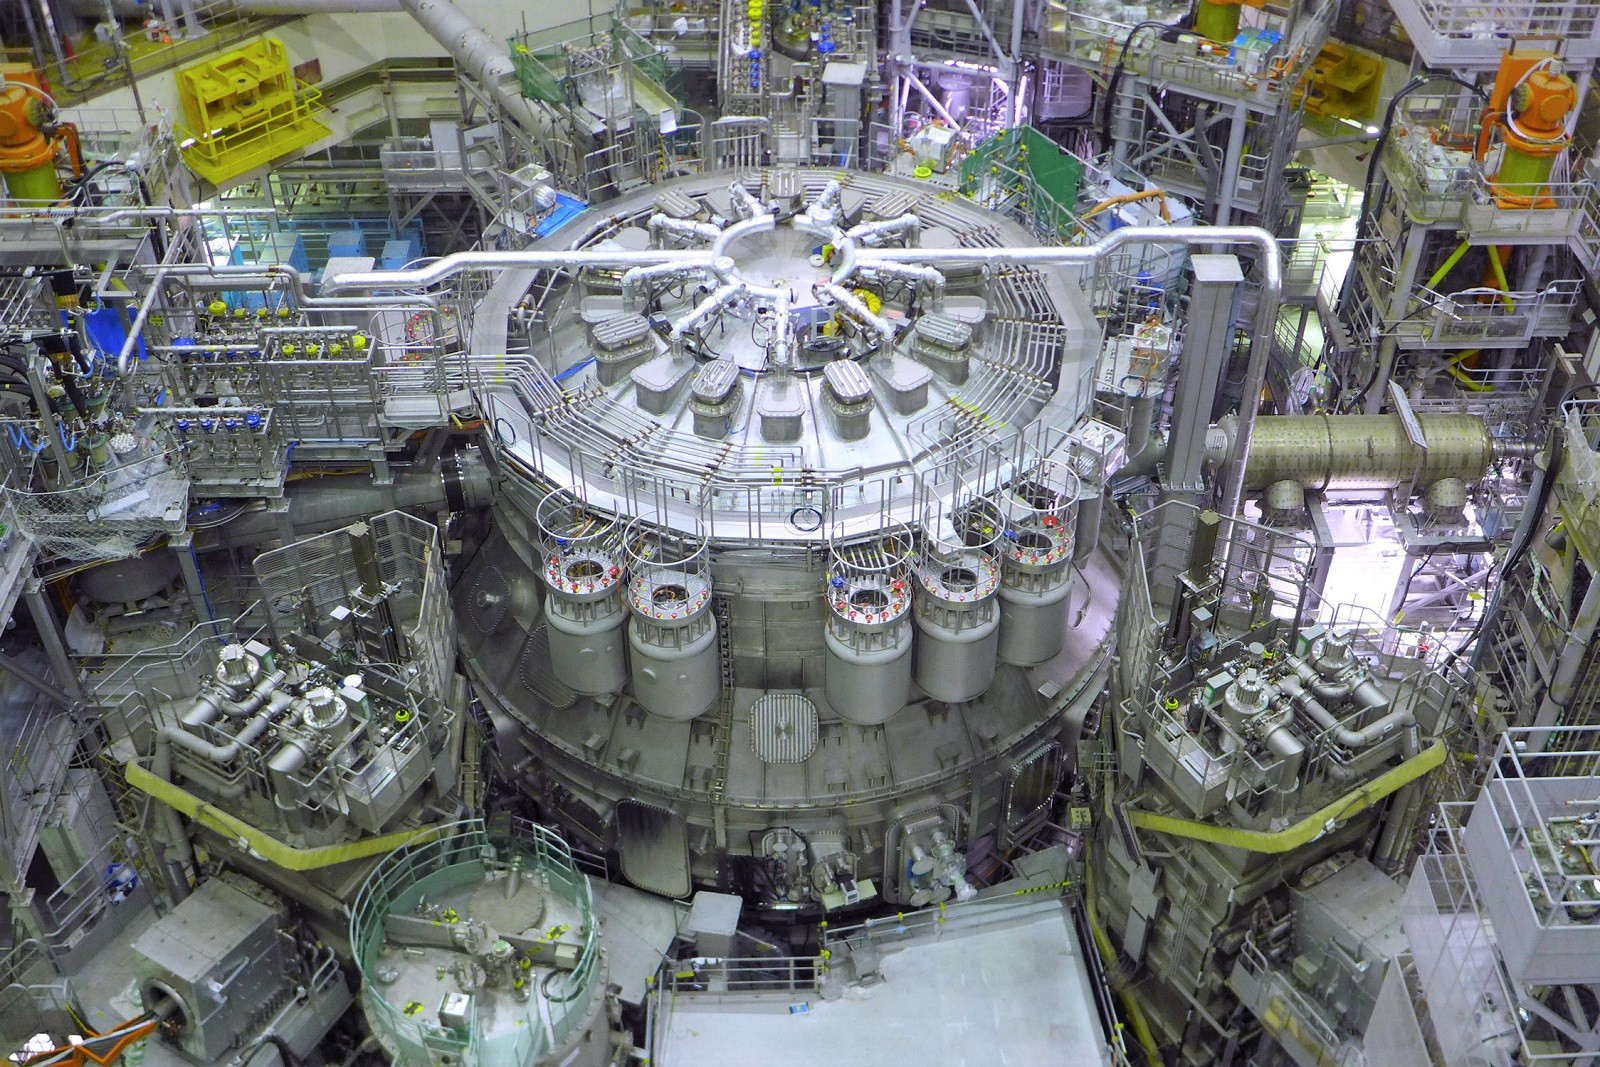 Ruszył największy na świecie reaktor termojądrowy. Czego możemy się po nim spodziewać?